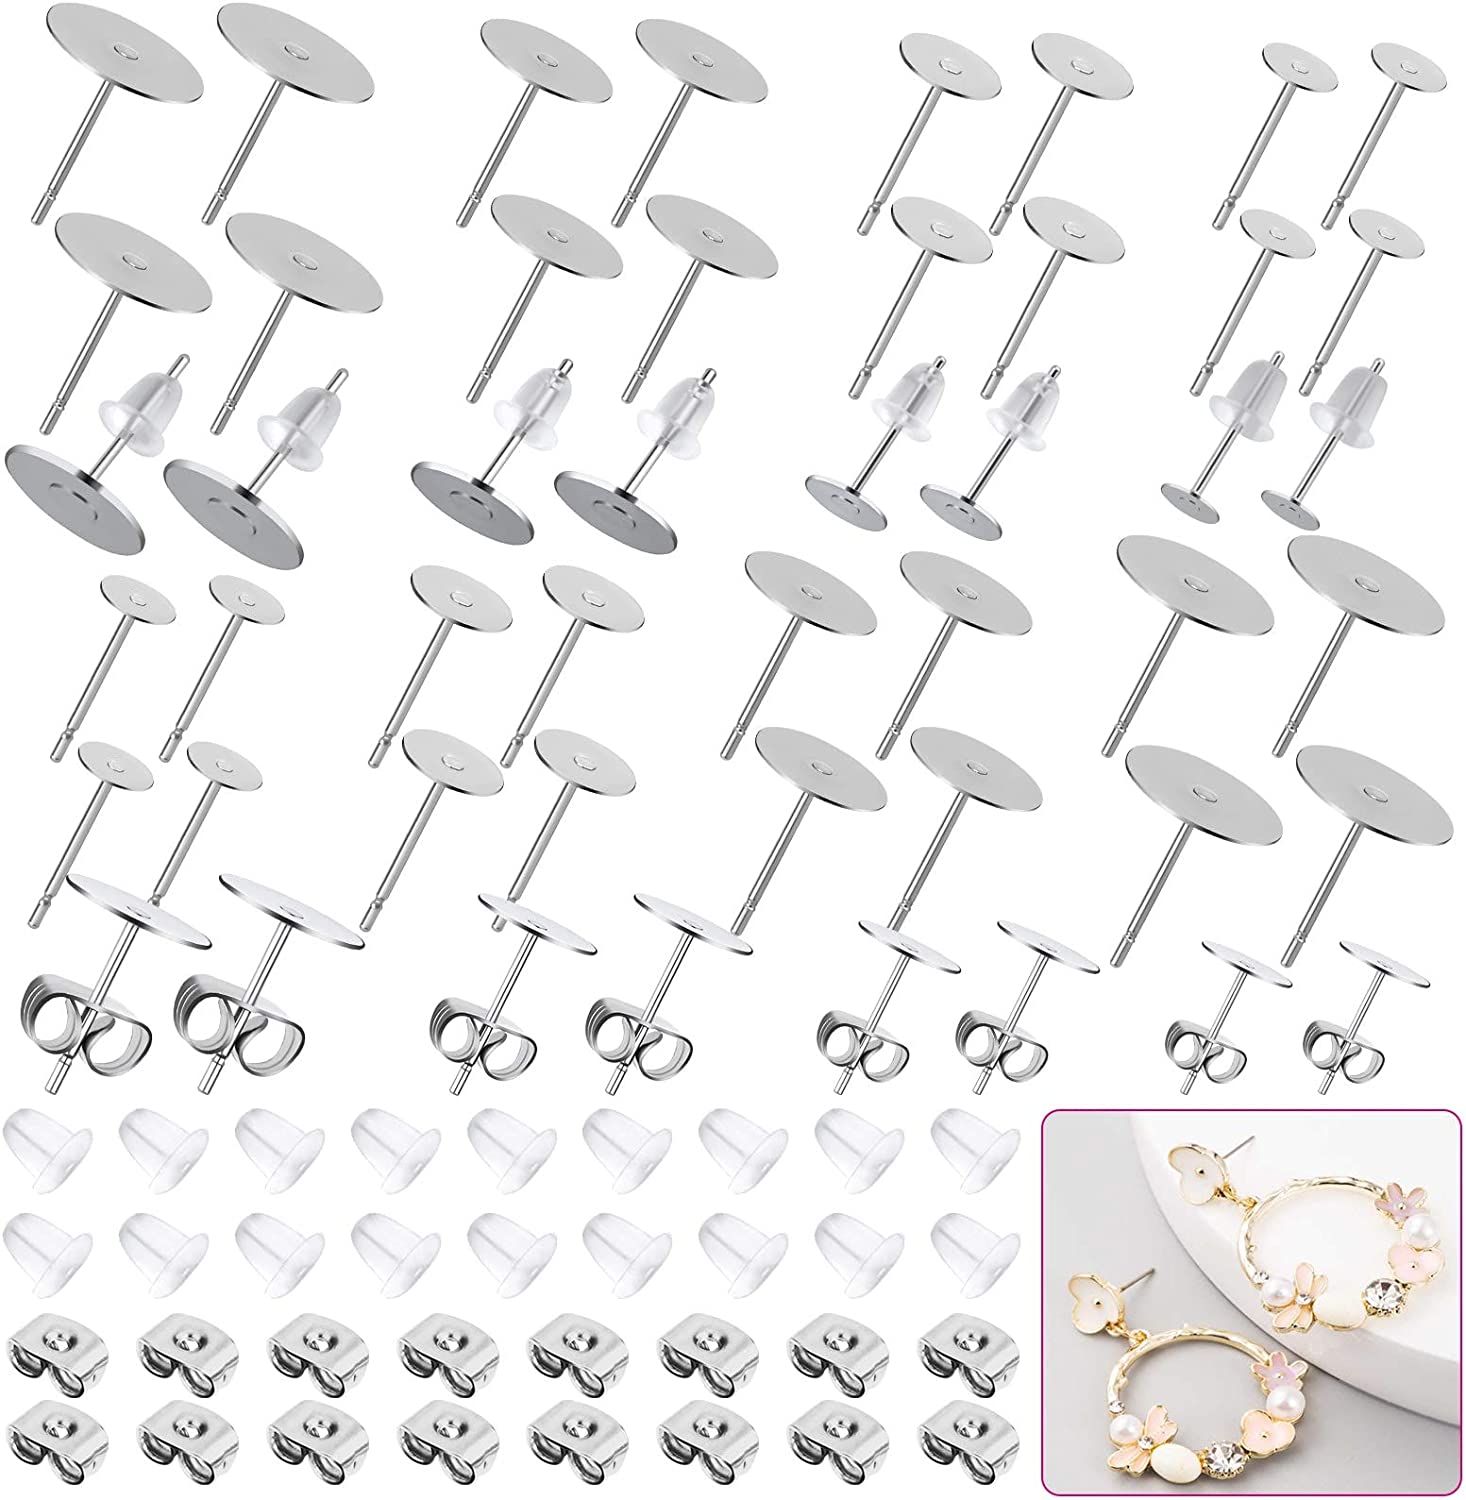 Earring Posts and Backs, 700Pcs Stud Earring Making Kit with 300Pcs  Stainless Steel Earring Posts and 400Pcs Earring Backs, Earring Supplies  Kit for